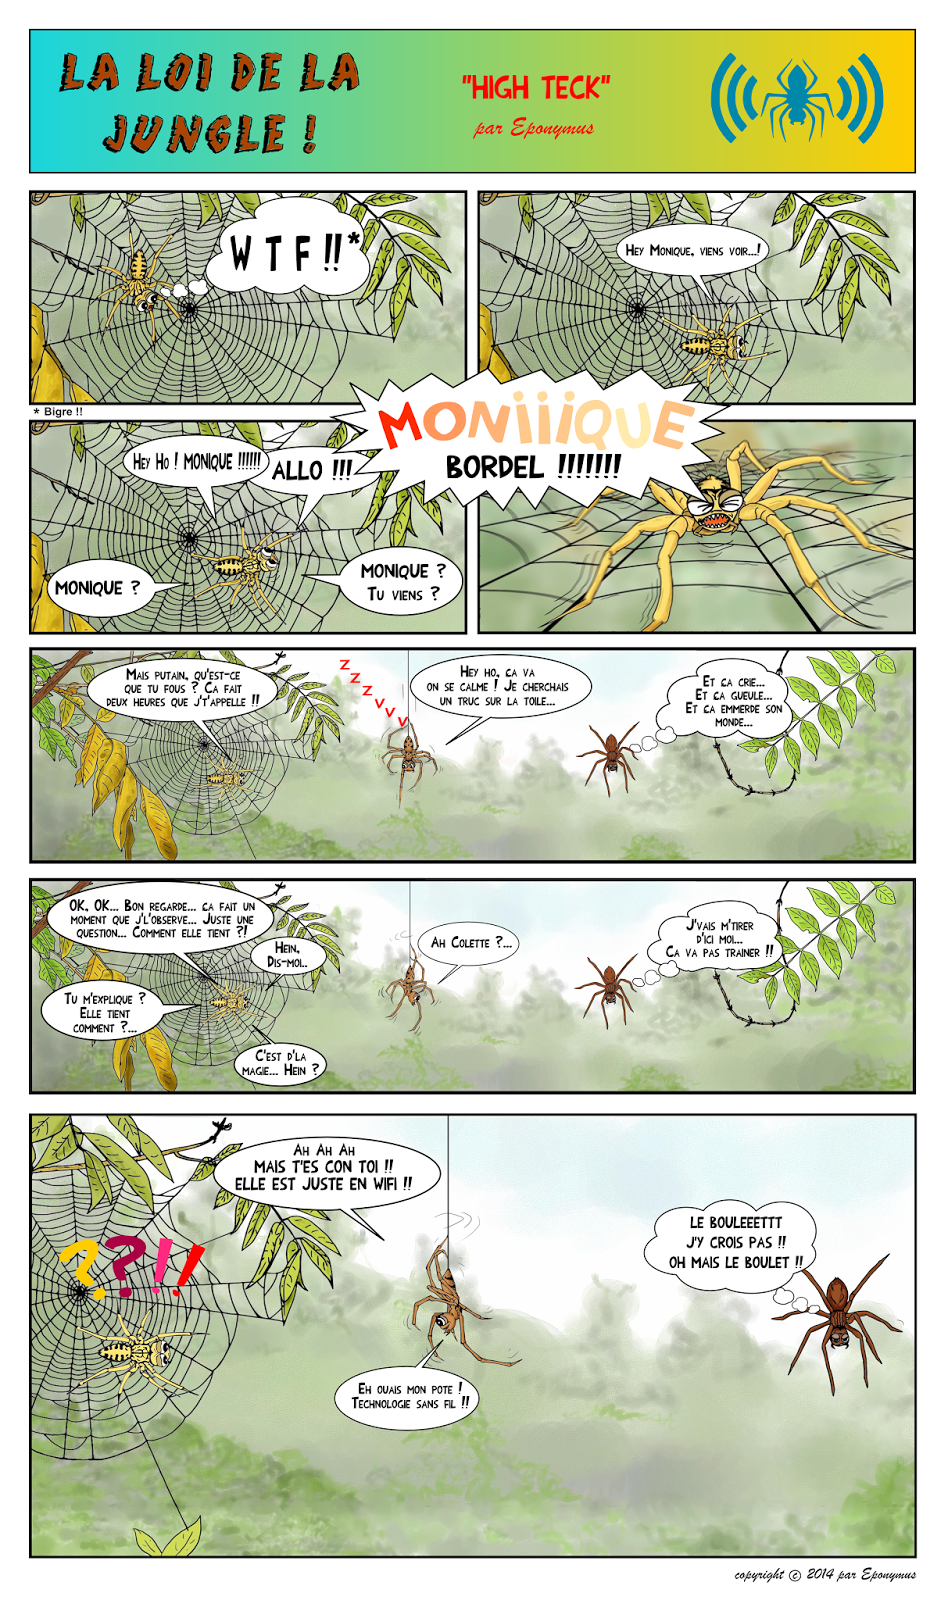 La loi de la jungle page 13